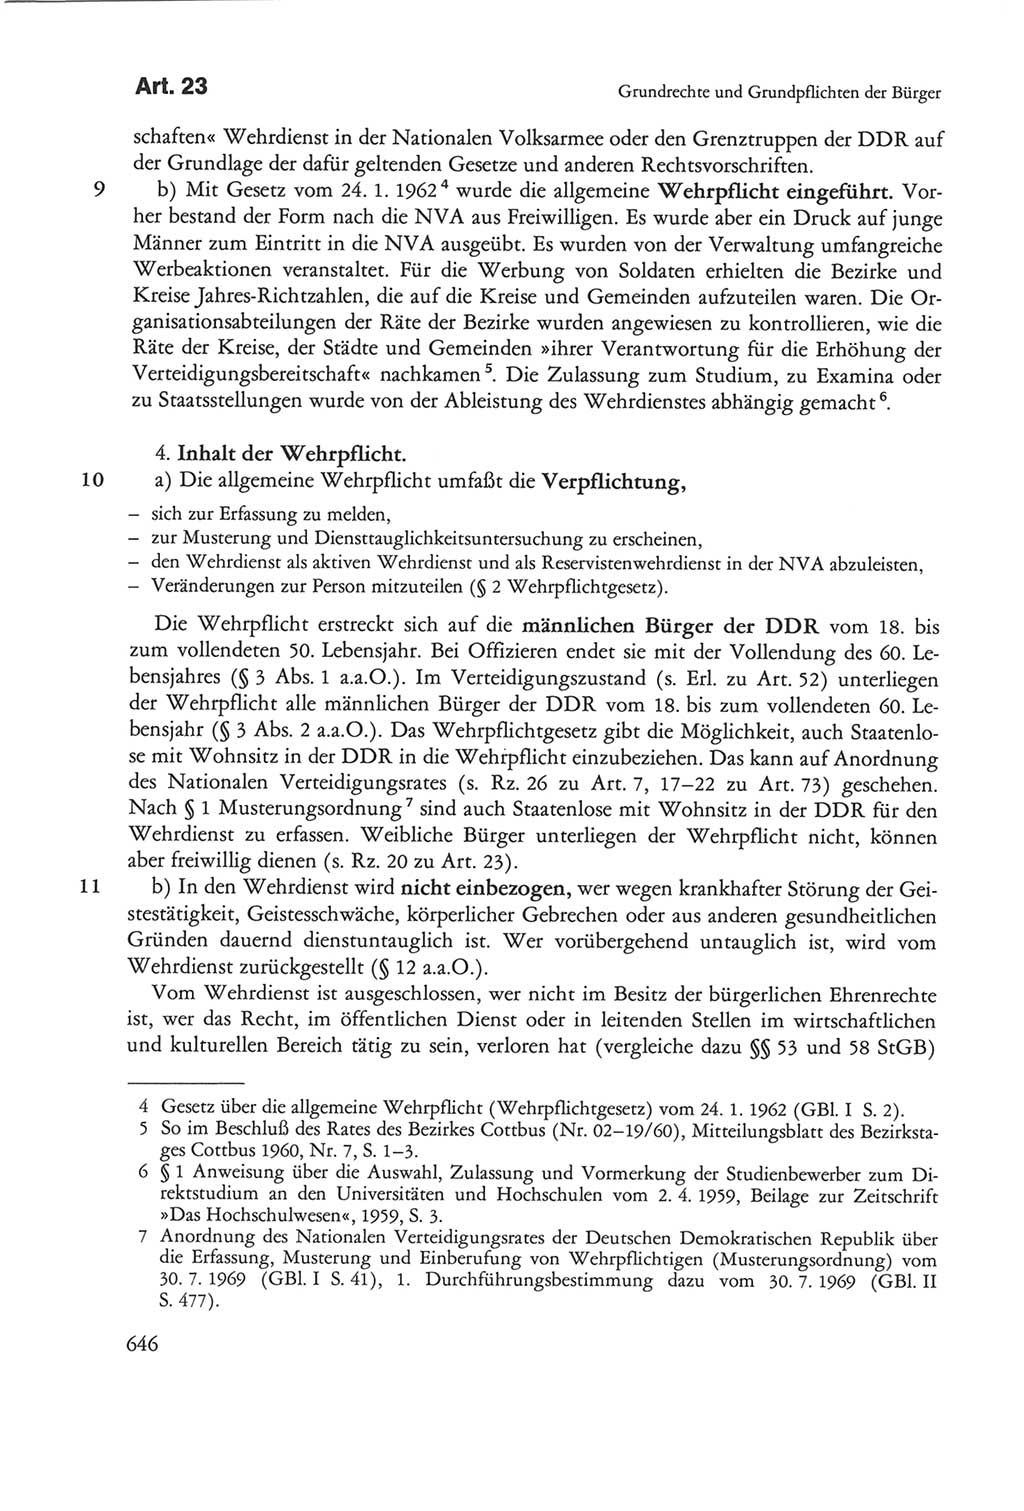 Die sozialistische Verfassung der Deutschen Demokratischen Republik (DDR), Kommentar 1982, Seite 646 (Soz. Verf. DDR Komm. 1982, S. 646)